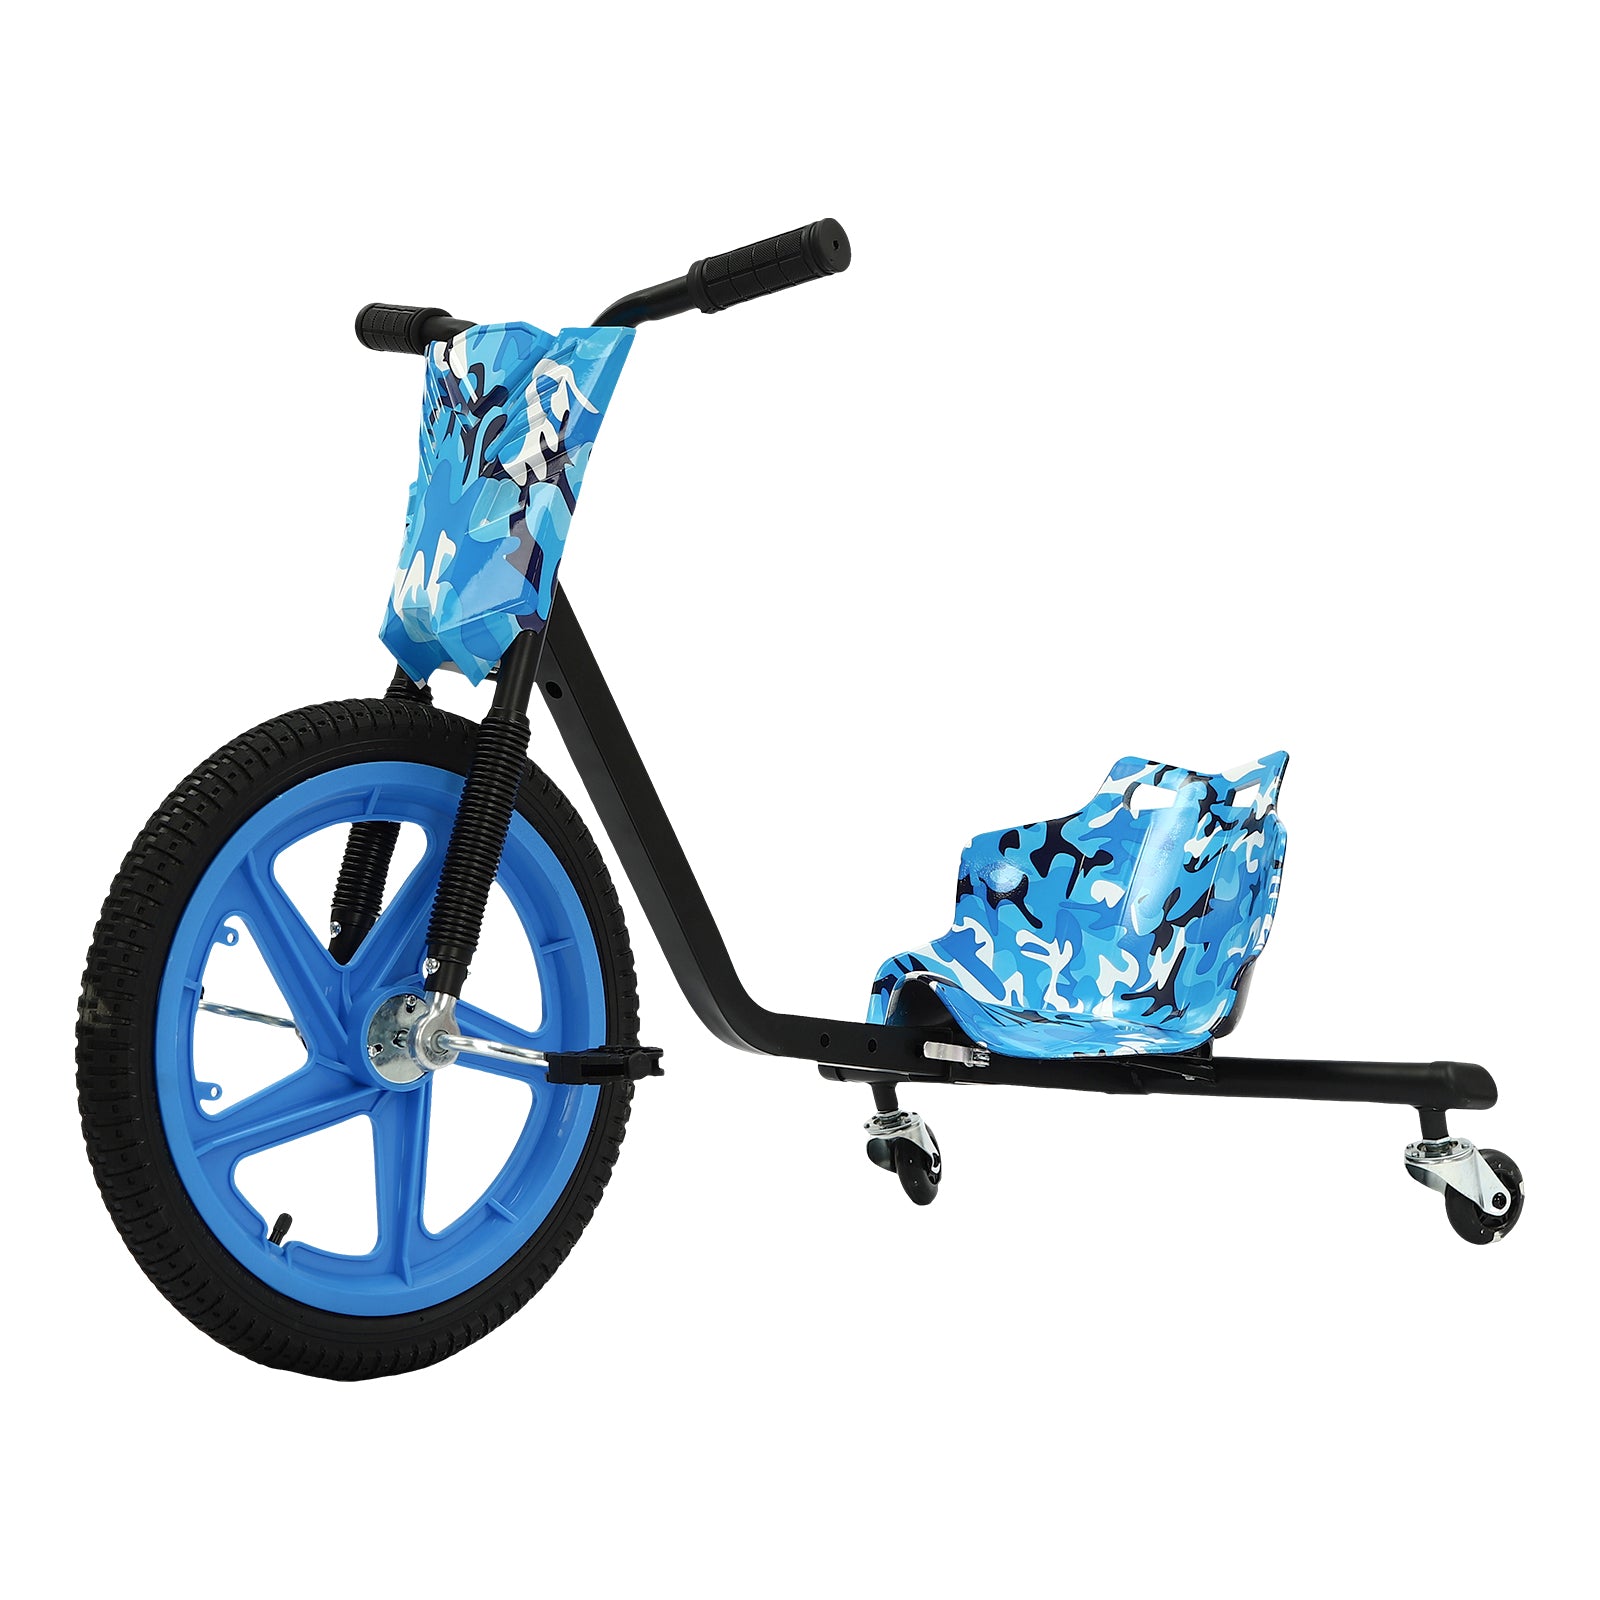 Pedal Go Kart für Kinder, Drift Trike Dreirad Auffahrbares Spielzeug